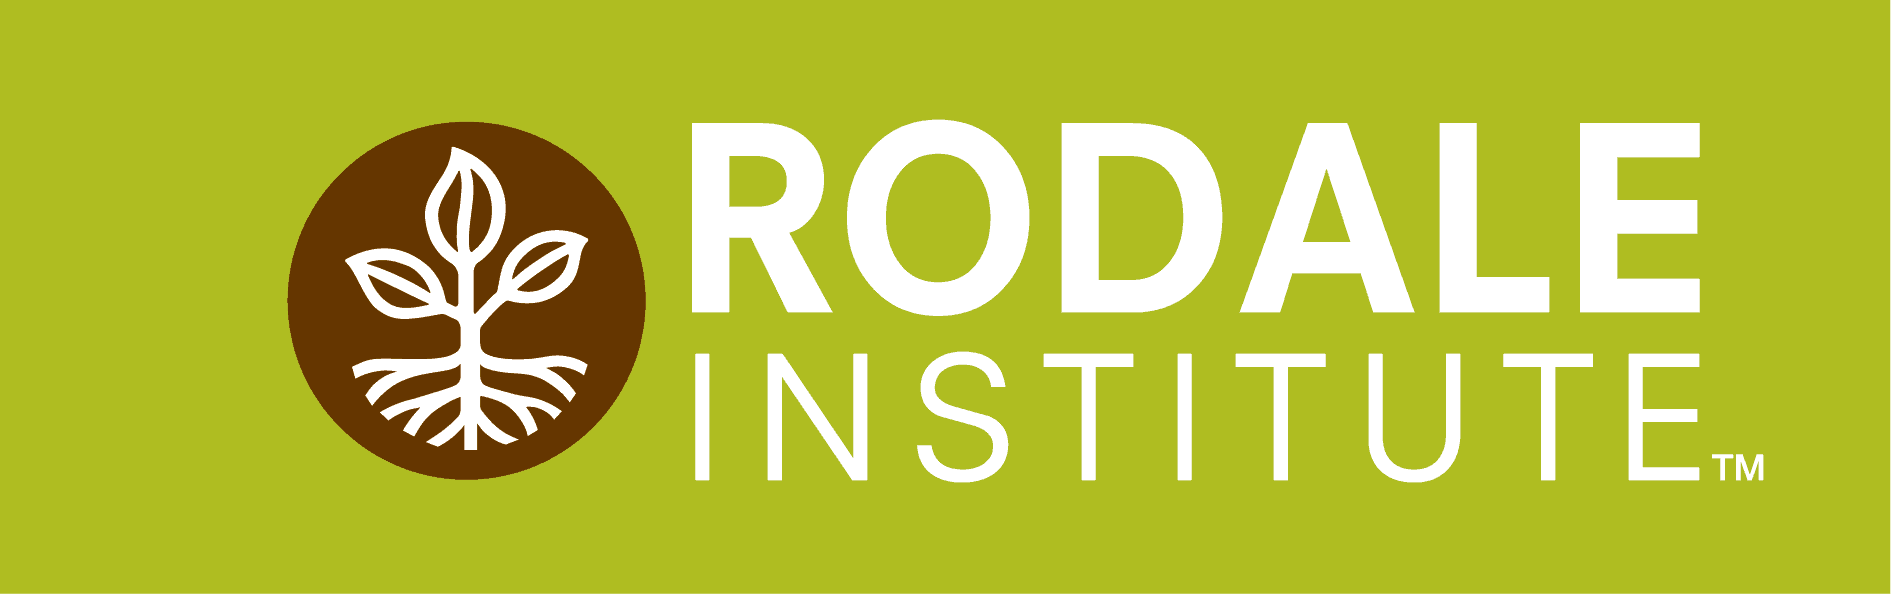 Rodale Institute